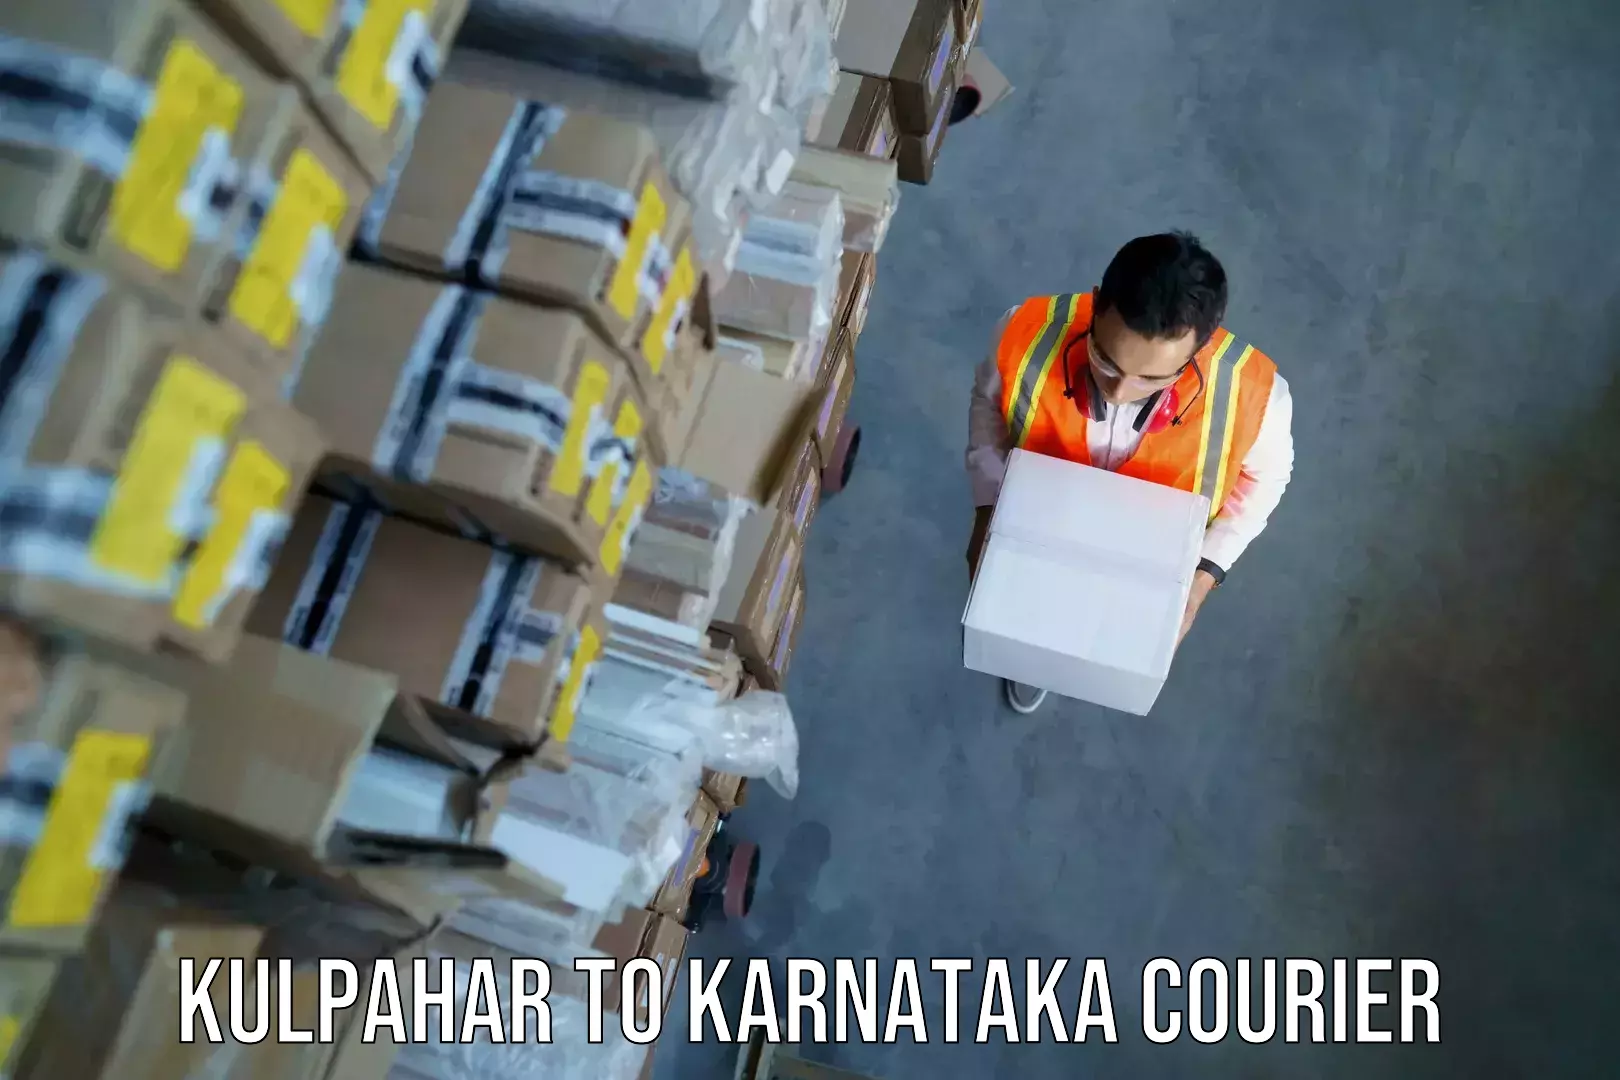 Baggage shipping quotes Kulpahar to Bangarapet